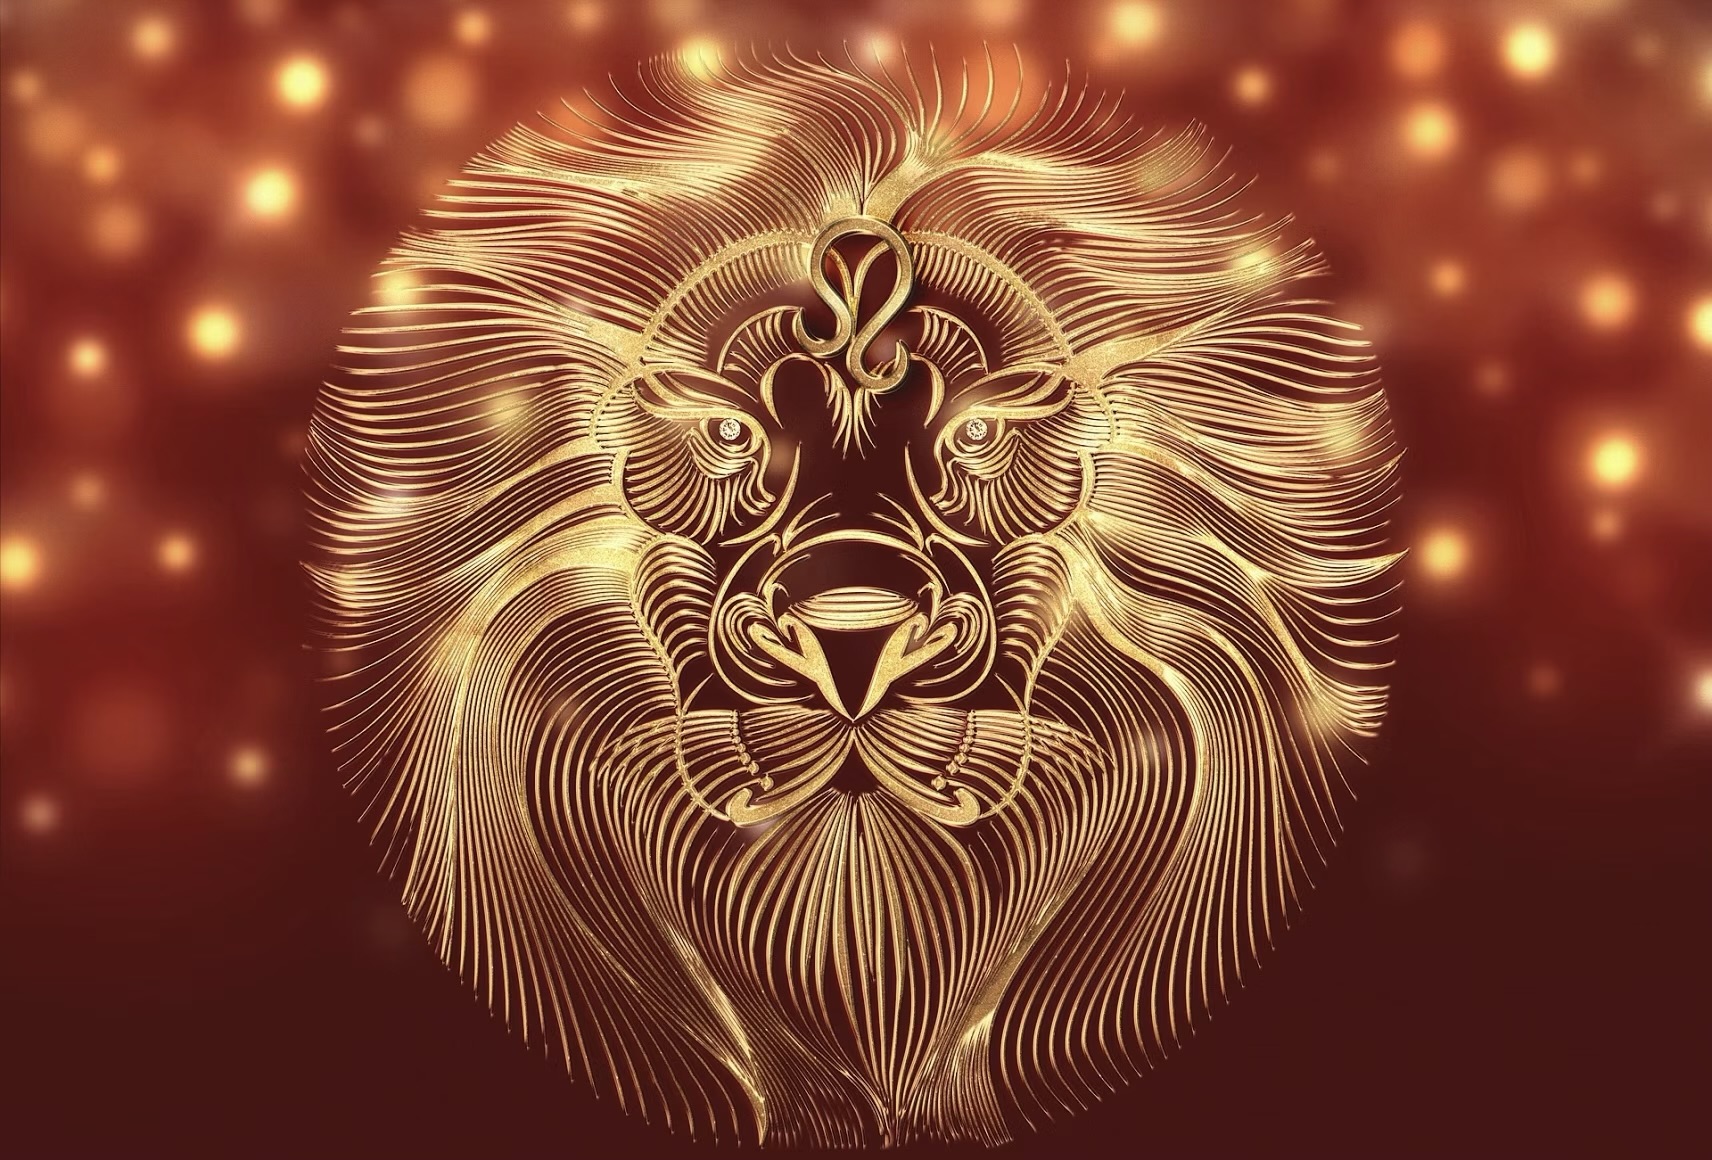 Ramalan Perjodohan Zodiak Leo: Pencarian Cinta dan Keharmonisan di Tahun Ini